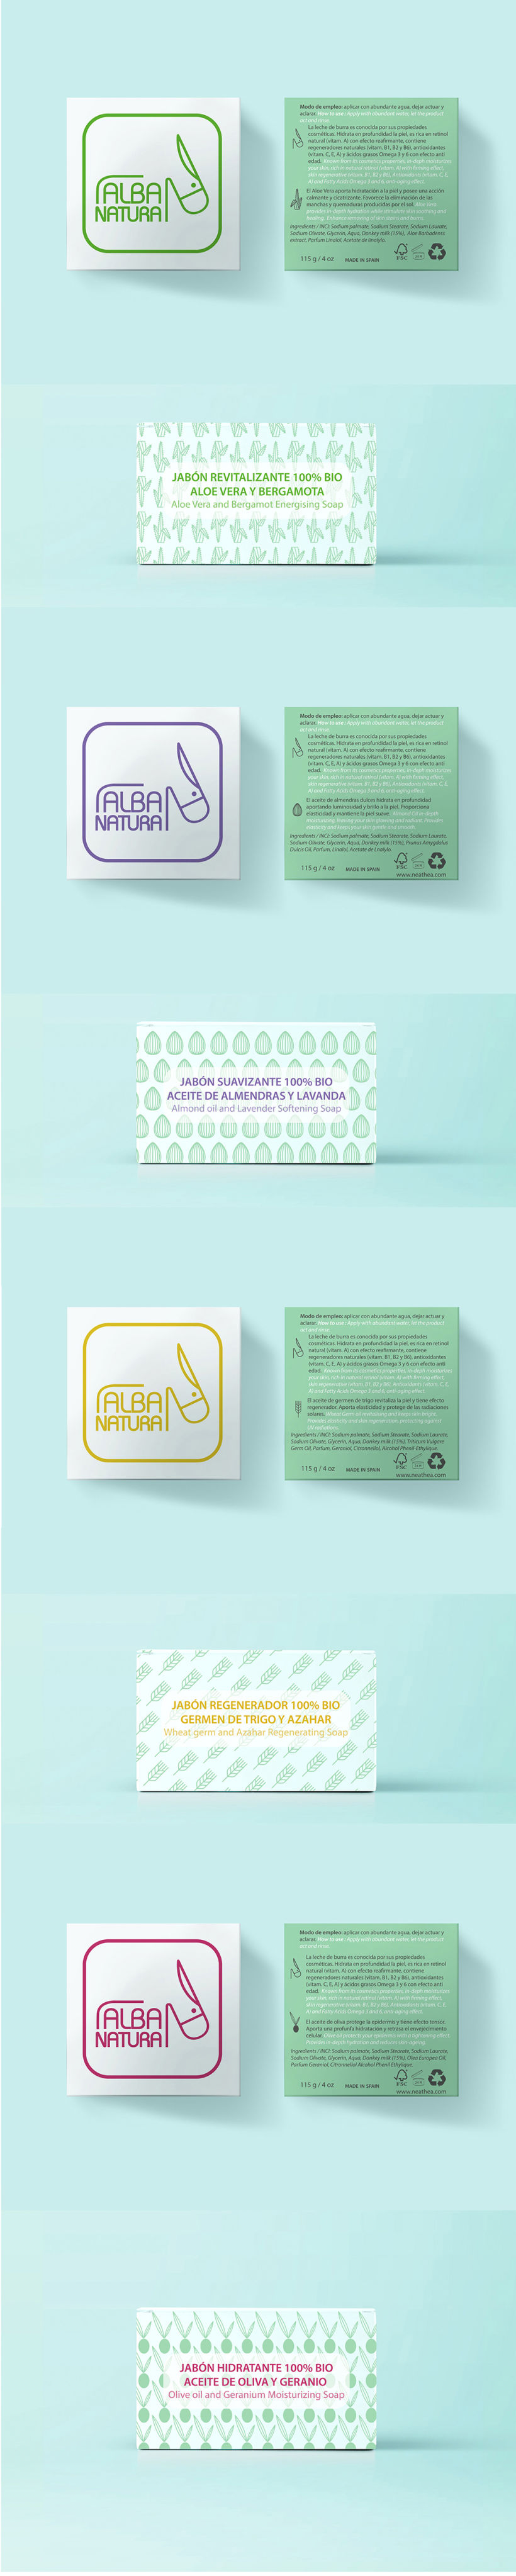 Logotipos, branding, diseño de flyers y de packagings que conforman la empresa NEATHEA (Alba Natura y Bioláctea) 3